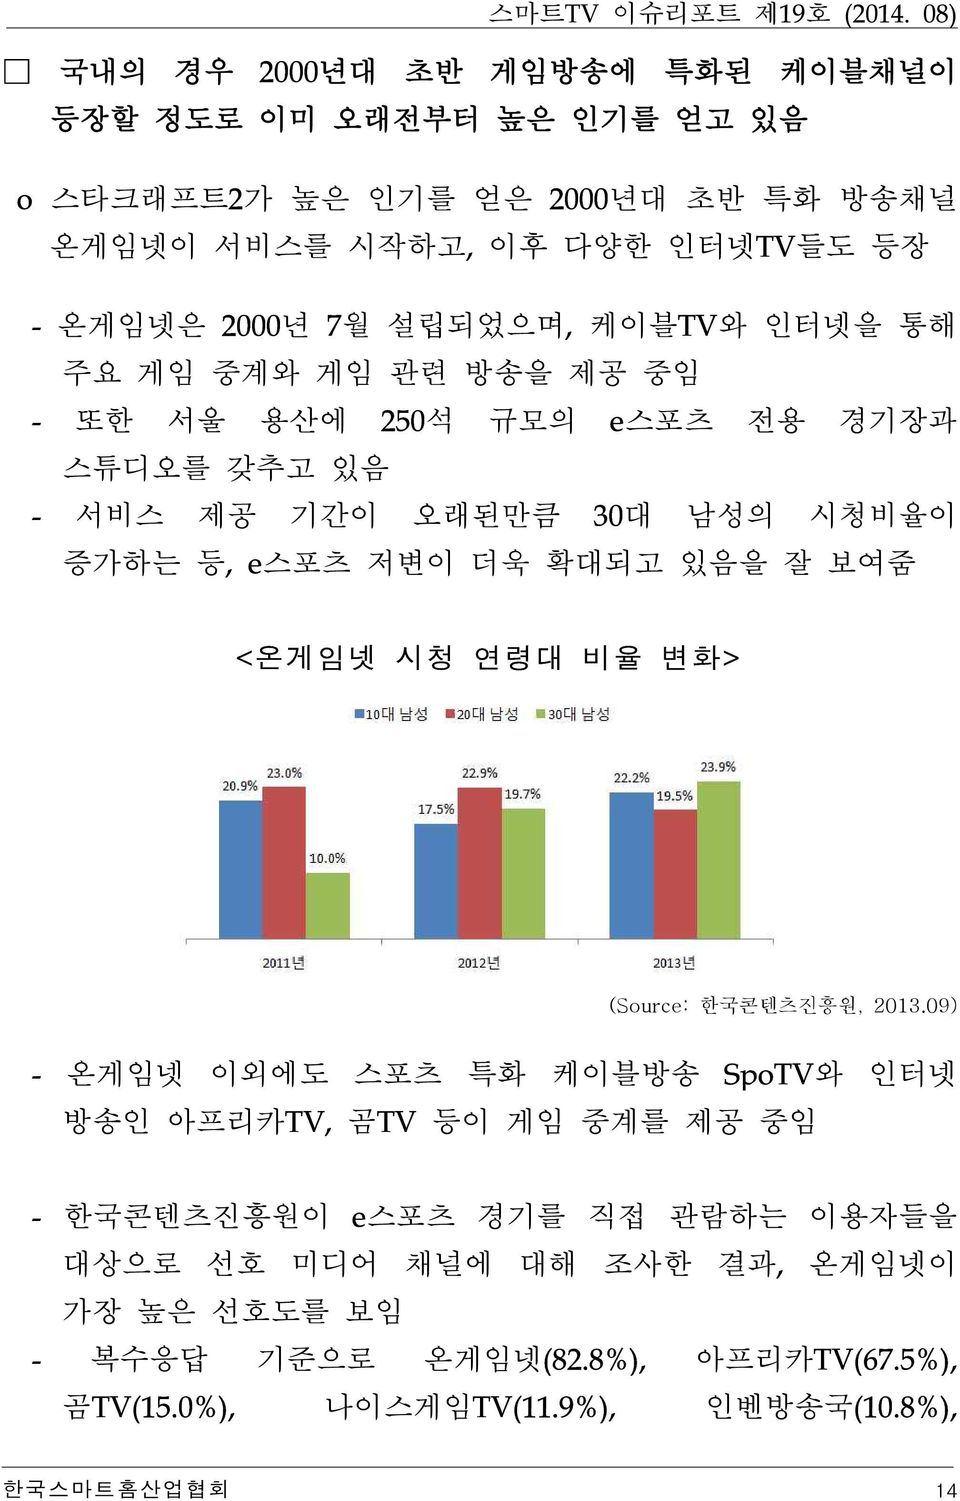 대남성의시청비율이증가하는등 스포츠저변이더욱확대되고있음을잘보여줌 (Source: 한국콘텐츠진흥원, 2013.